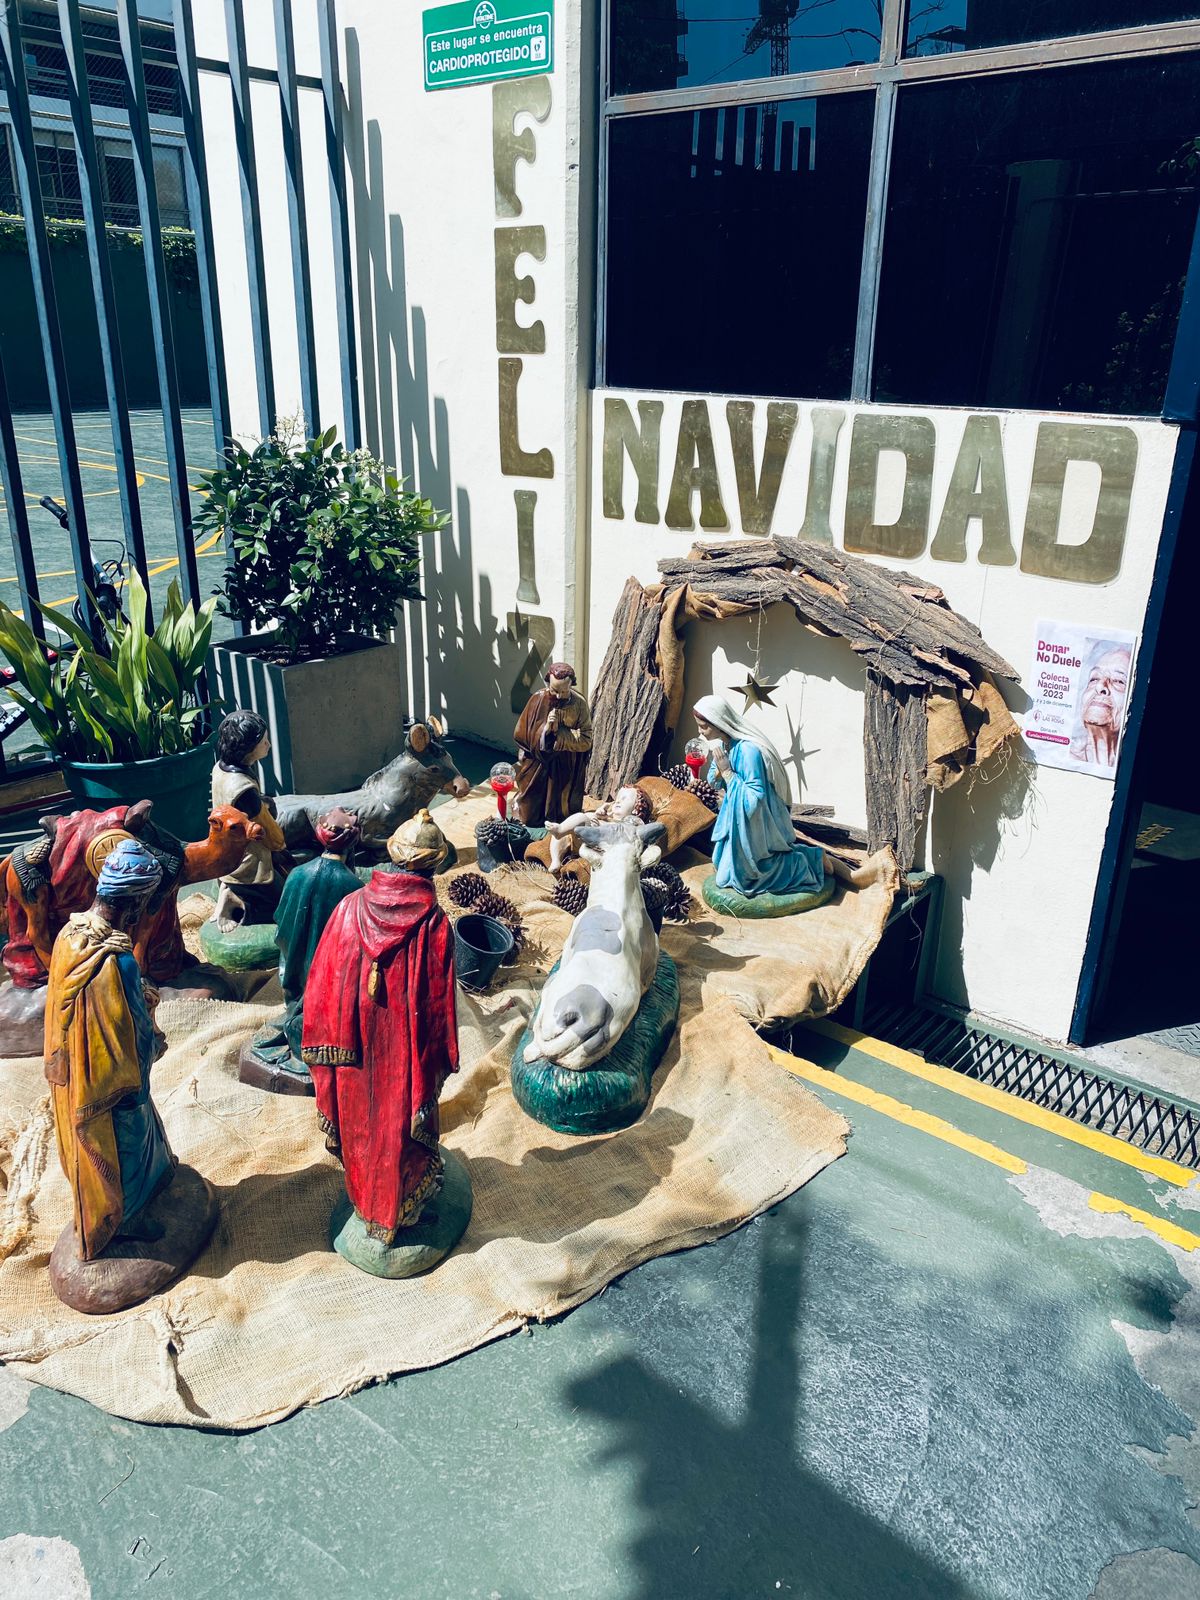 Concurso Puerta Navidad a la chilena CICV